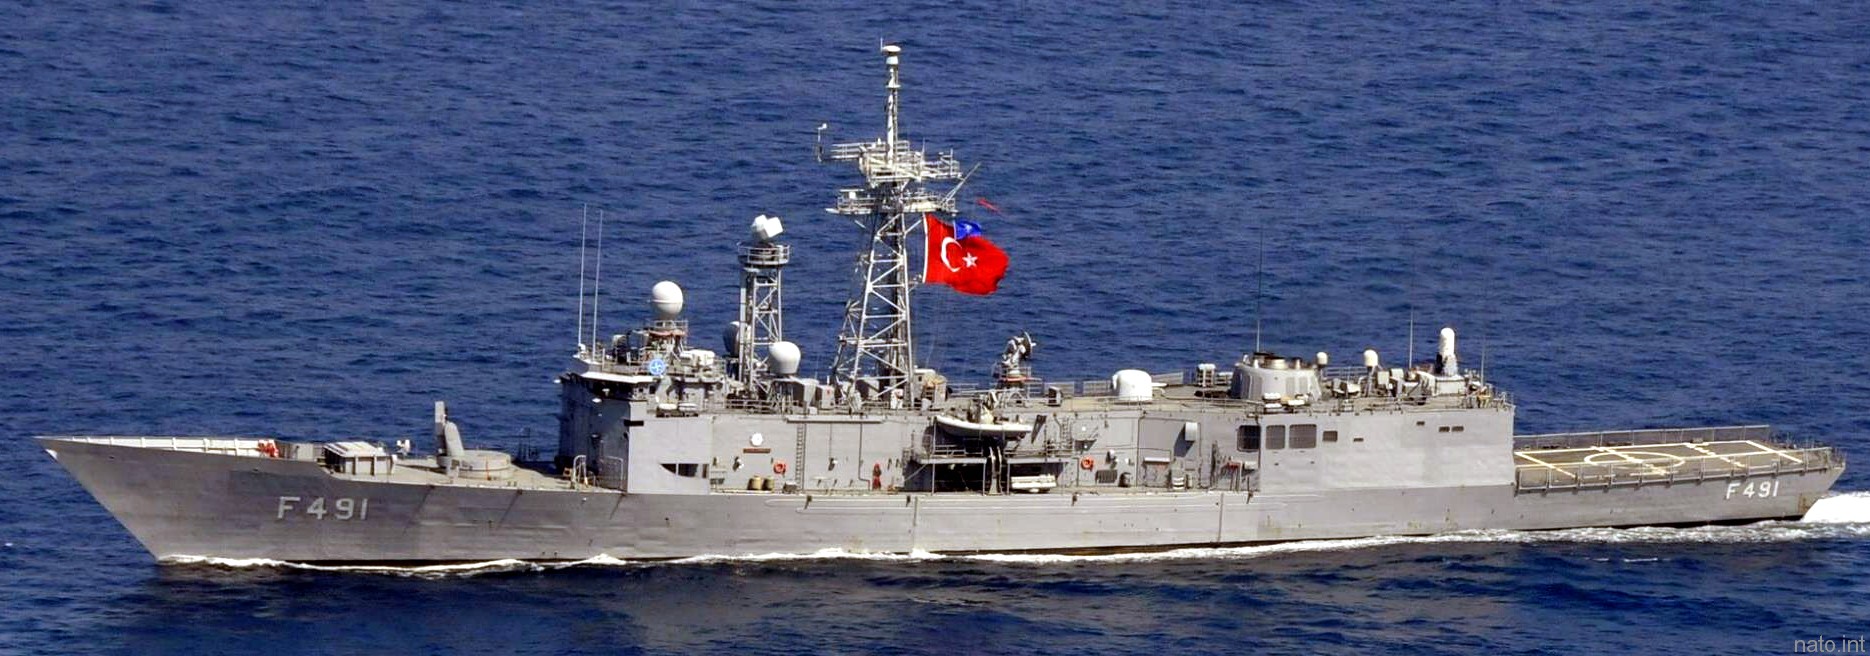 gabya g-class perry frigate ffg turkish navy türk deniz kuvvetleri f-491 tcg giresun 02c